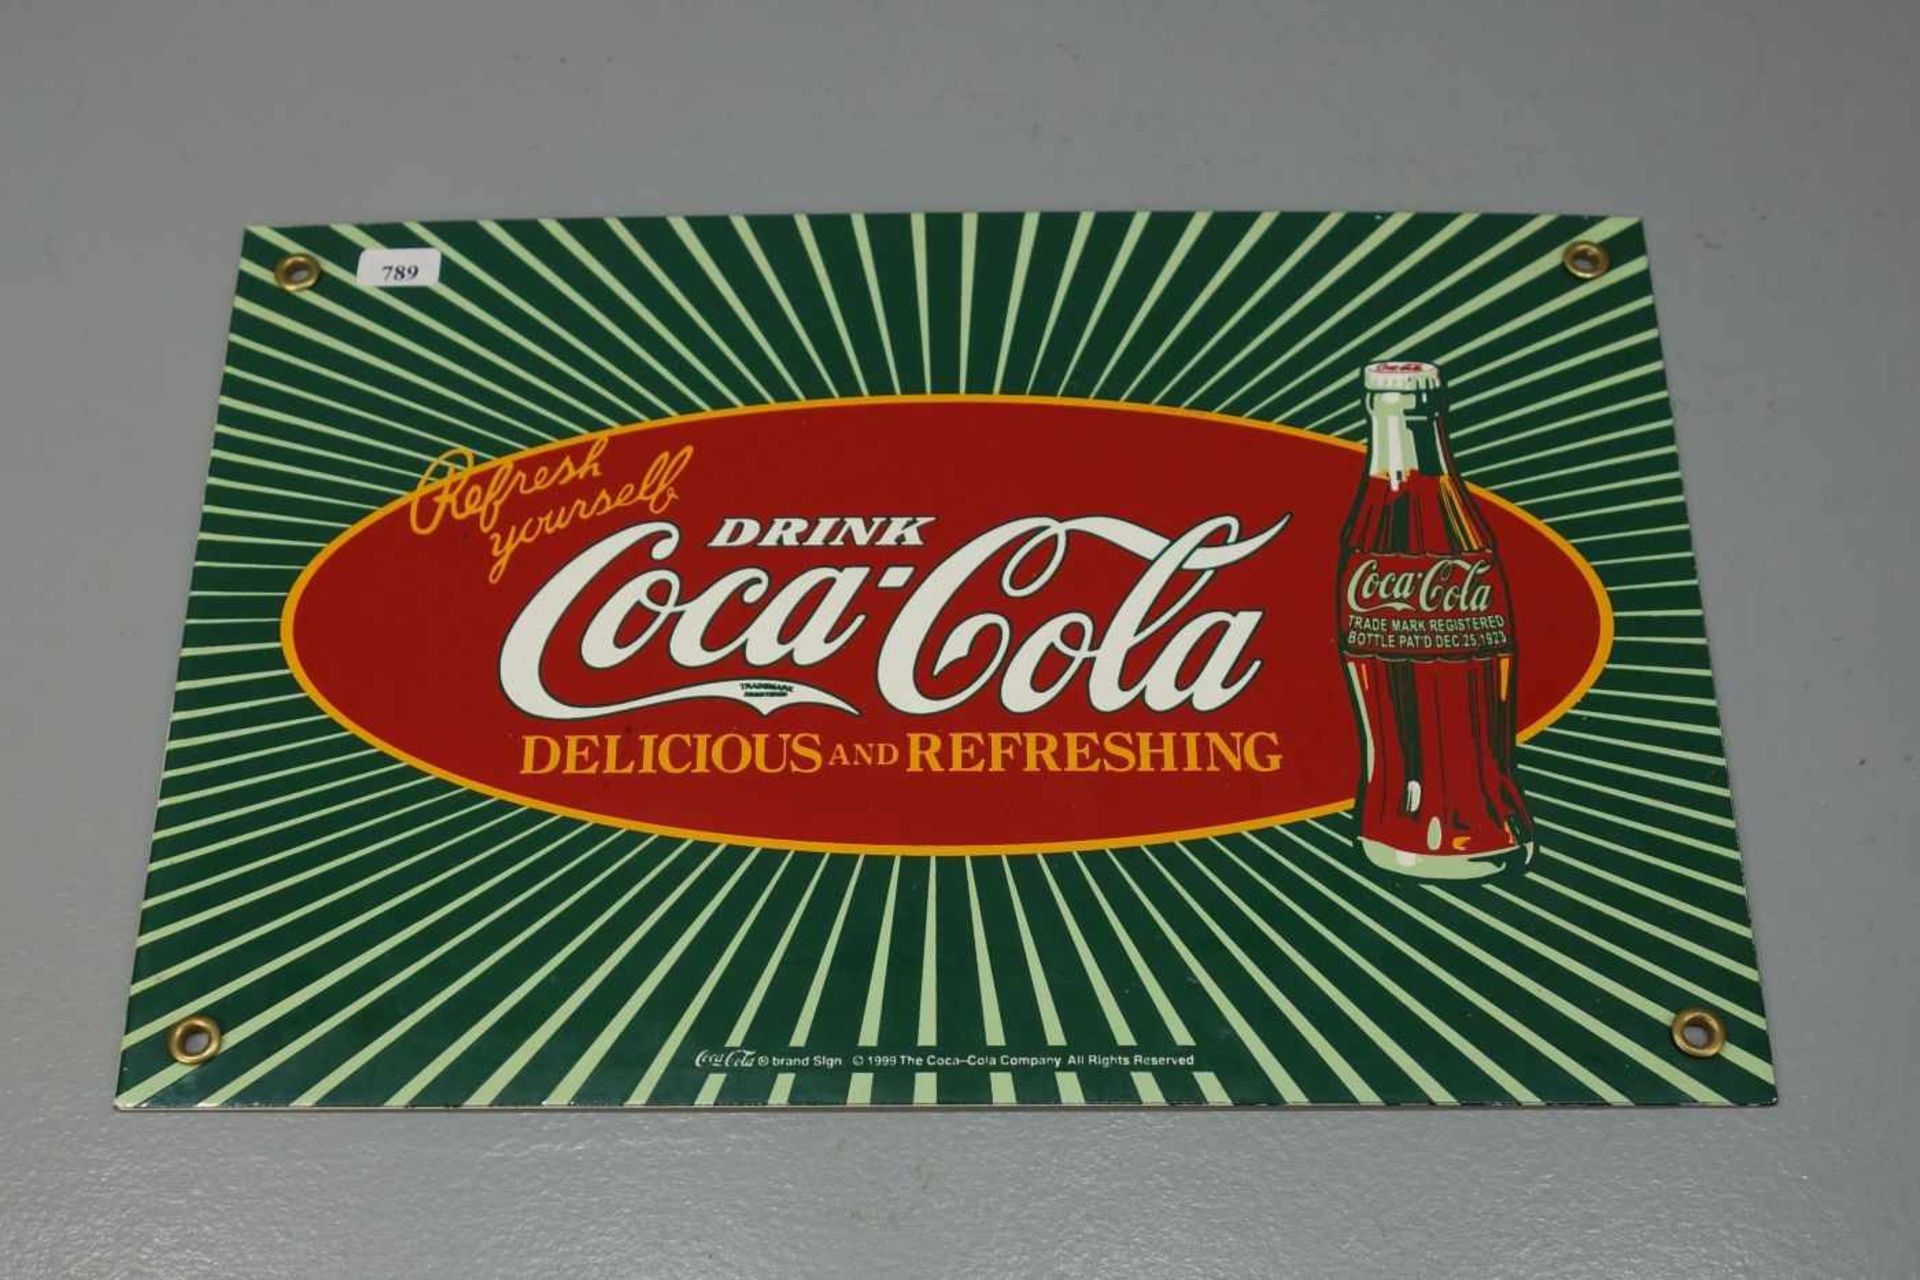 EMAILLESCHILD / BLECHSCHILD / WERBESCHILD: "Coca Cola", rechteckig, emailliert. Werbeschild des